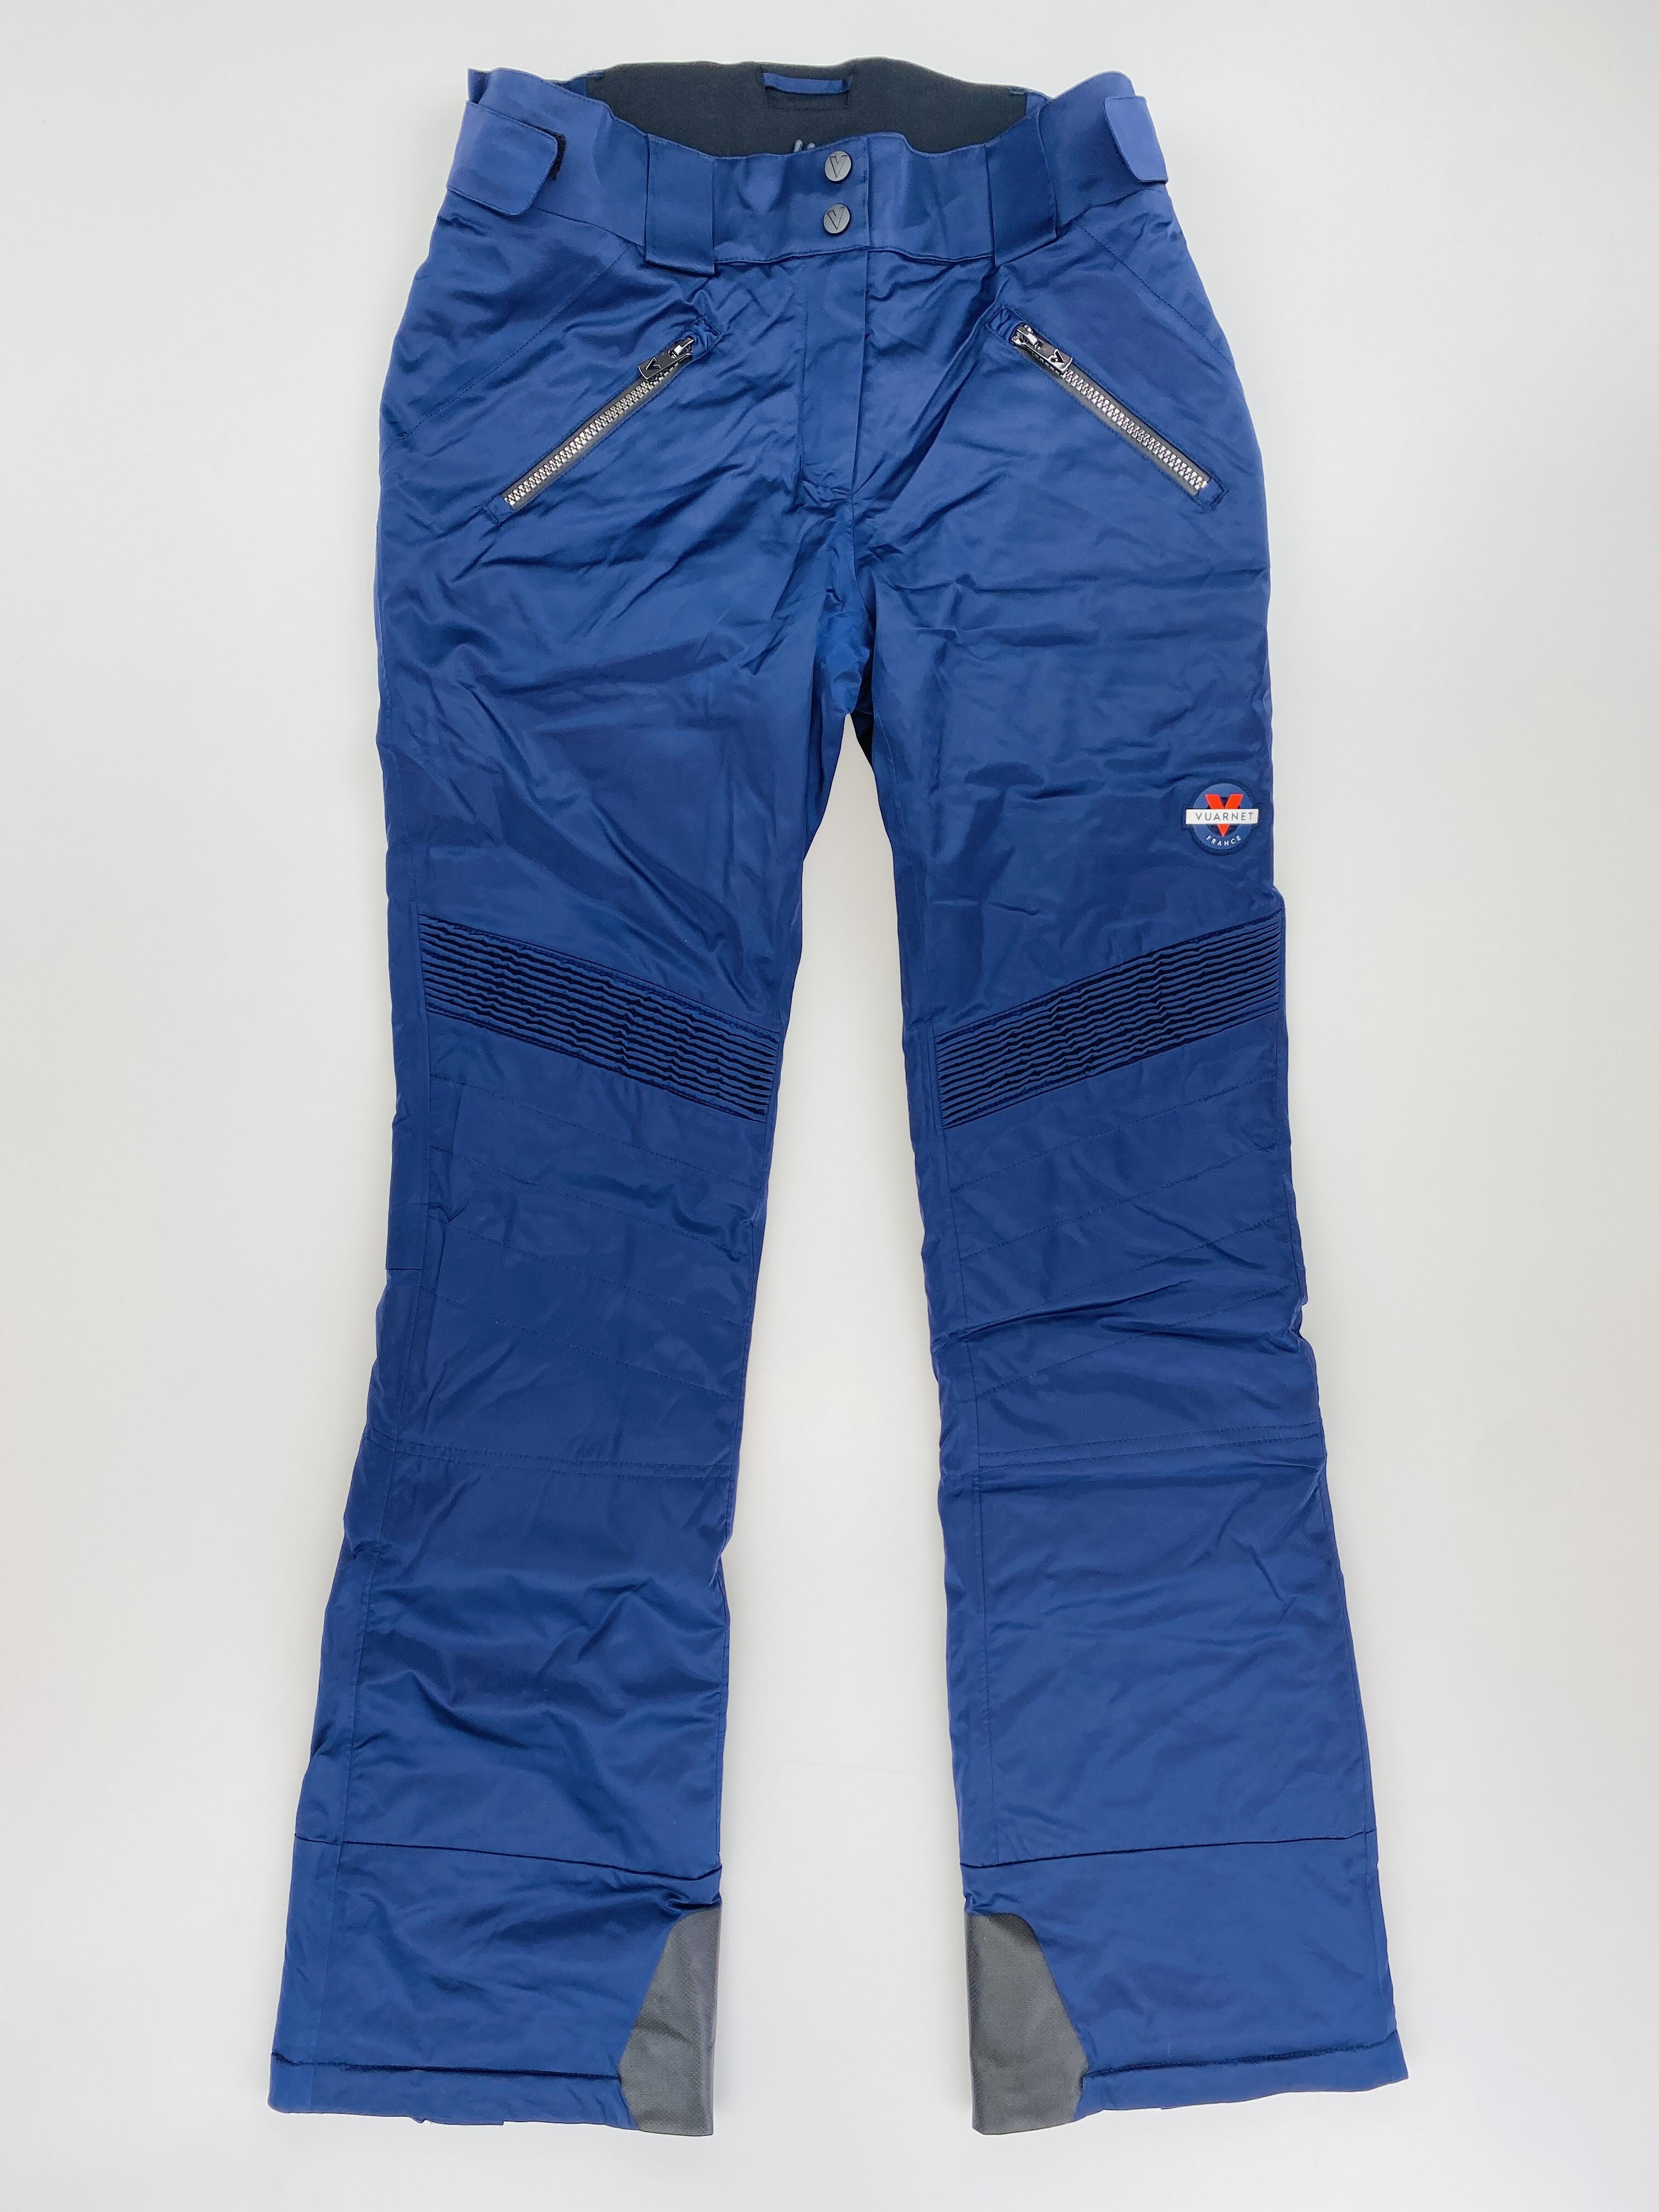 Vuarnet W'S Yakima Pant - Second Hand Spodnie narciarskie damskie - Niebieski - S | Hardloop